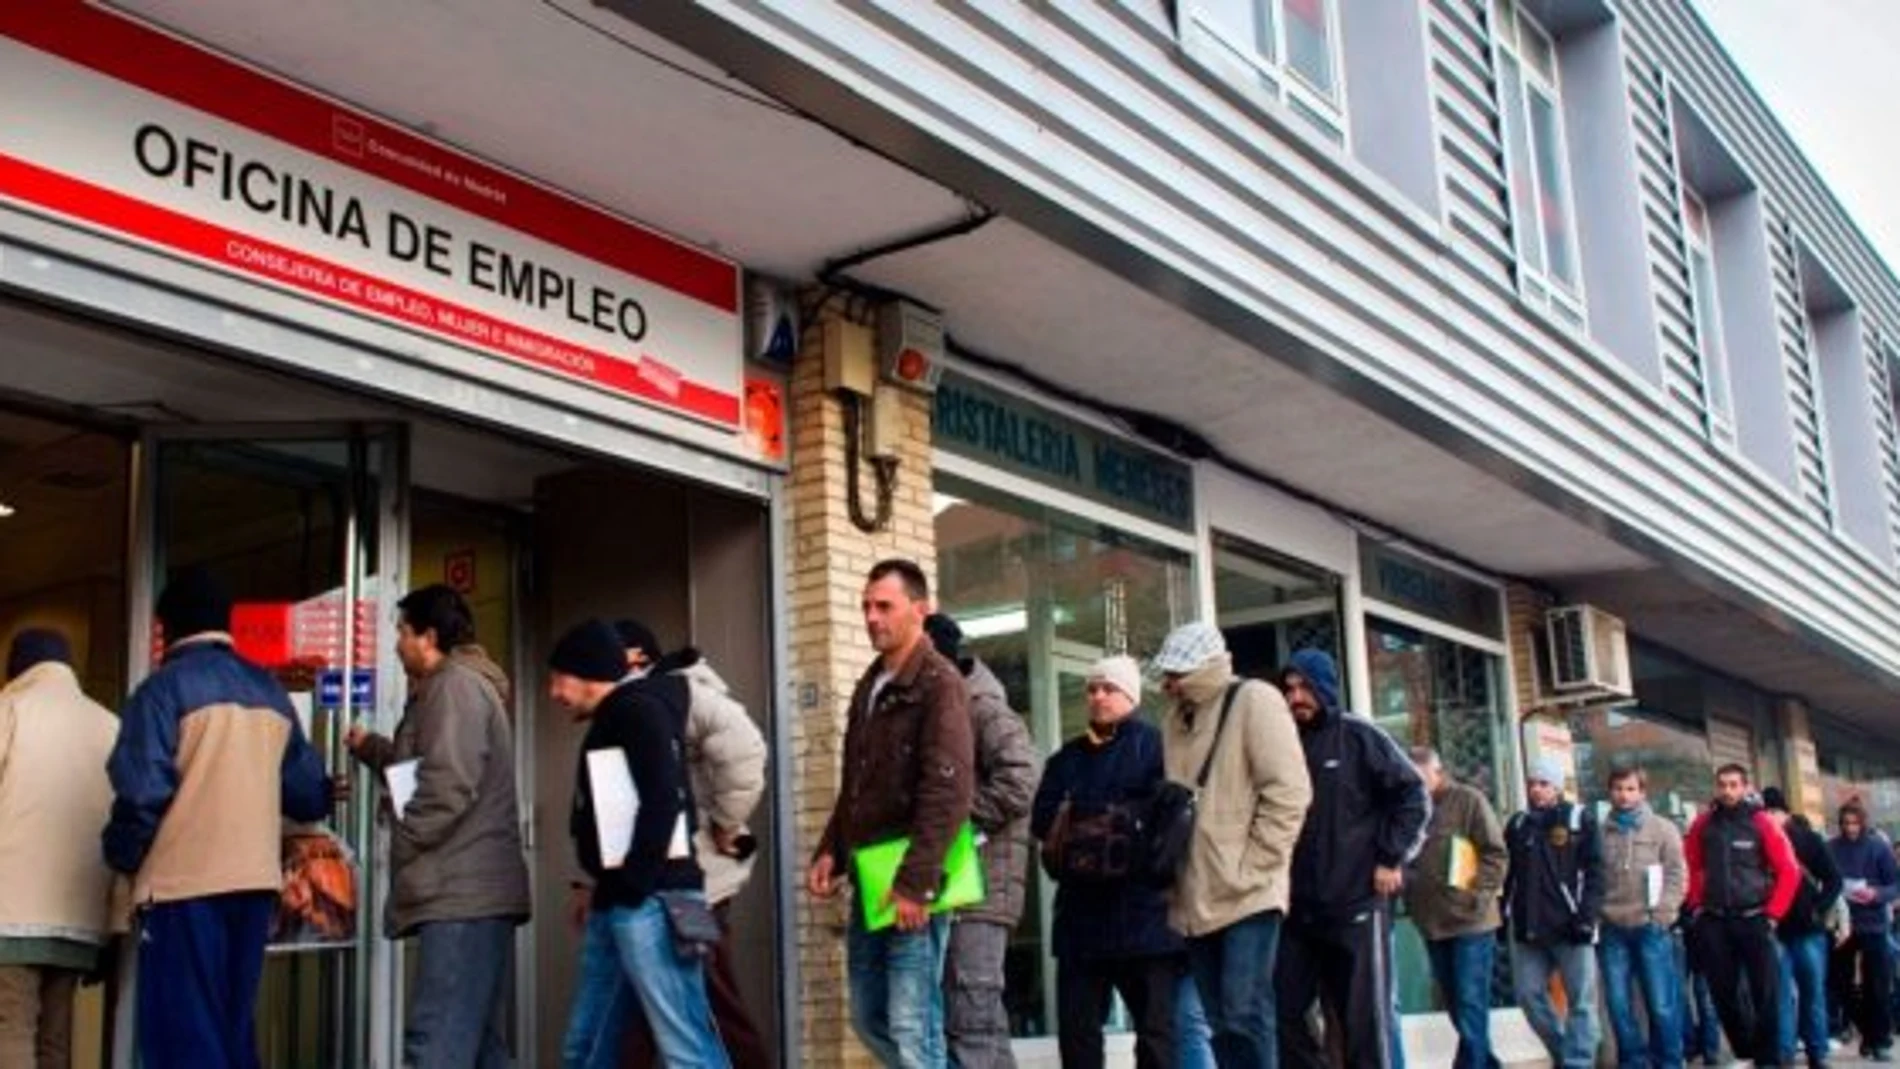 Se han aprobado los criterios generales de la Oferta de Empleo Público en la Comunidad de Madrid para 2018, que recogen un total de 15.328 plazas / Efe